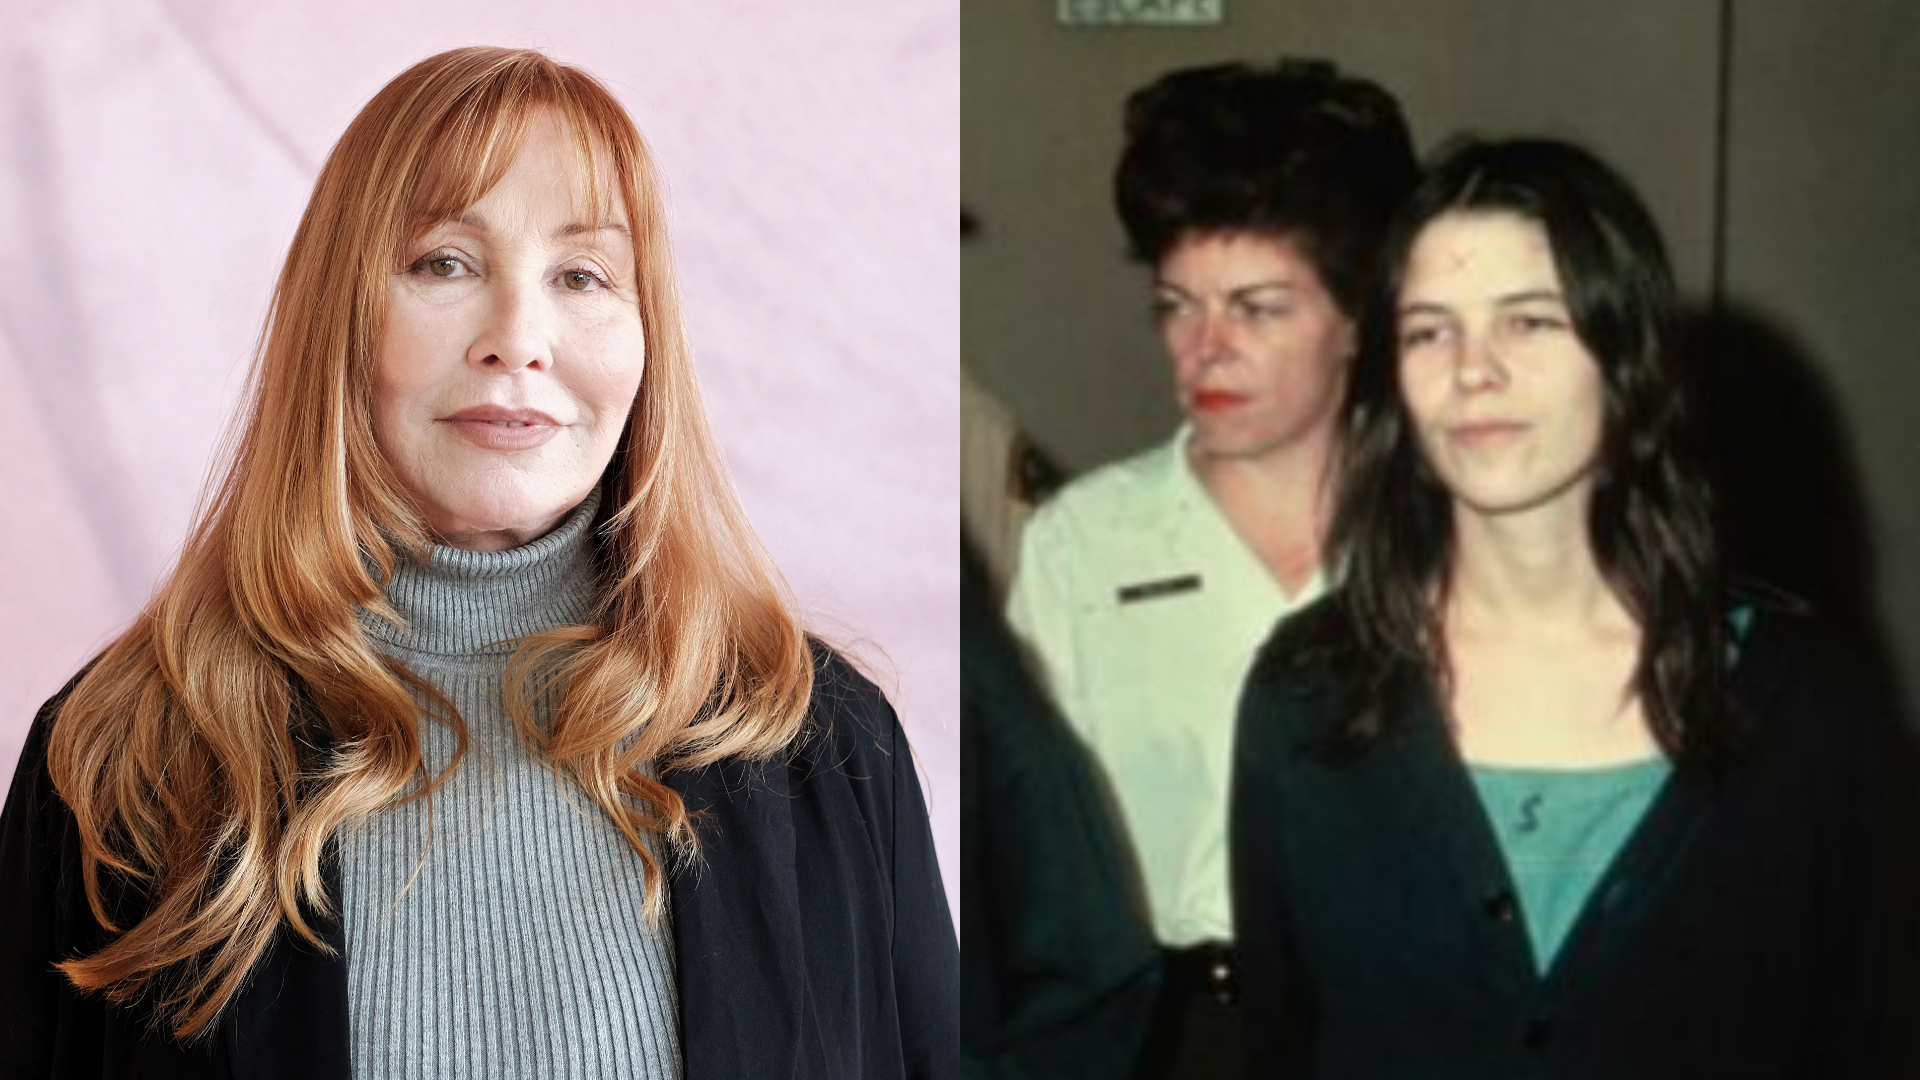 Irmã de Sharon Tate se manifesta após soltura de seguidora de Charles Manson: “Absolutamente apavorada”